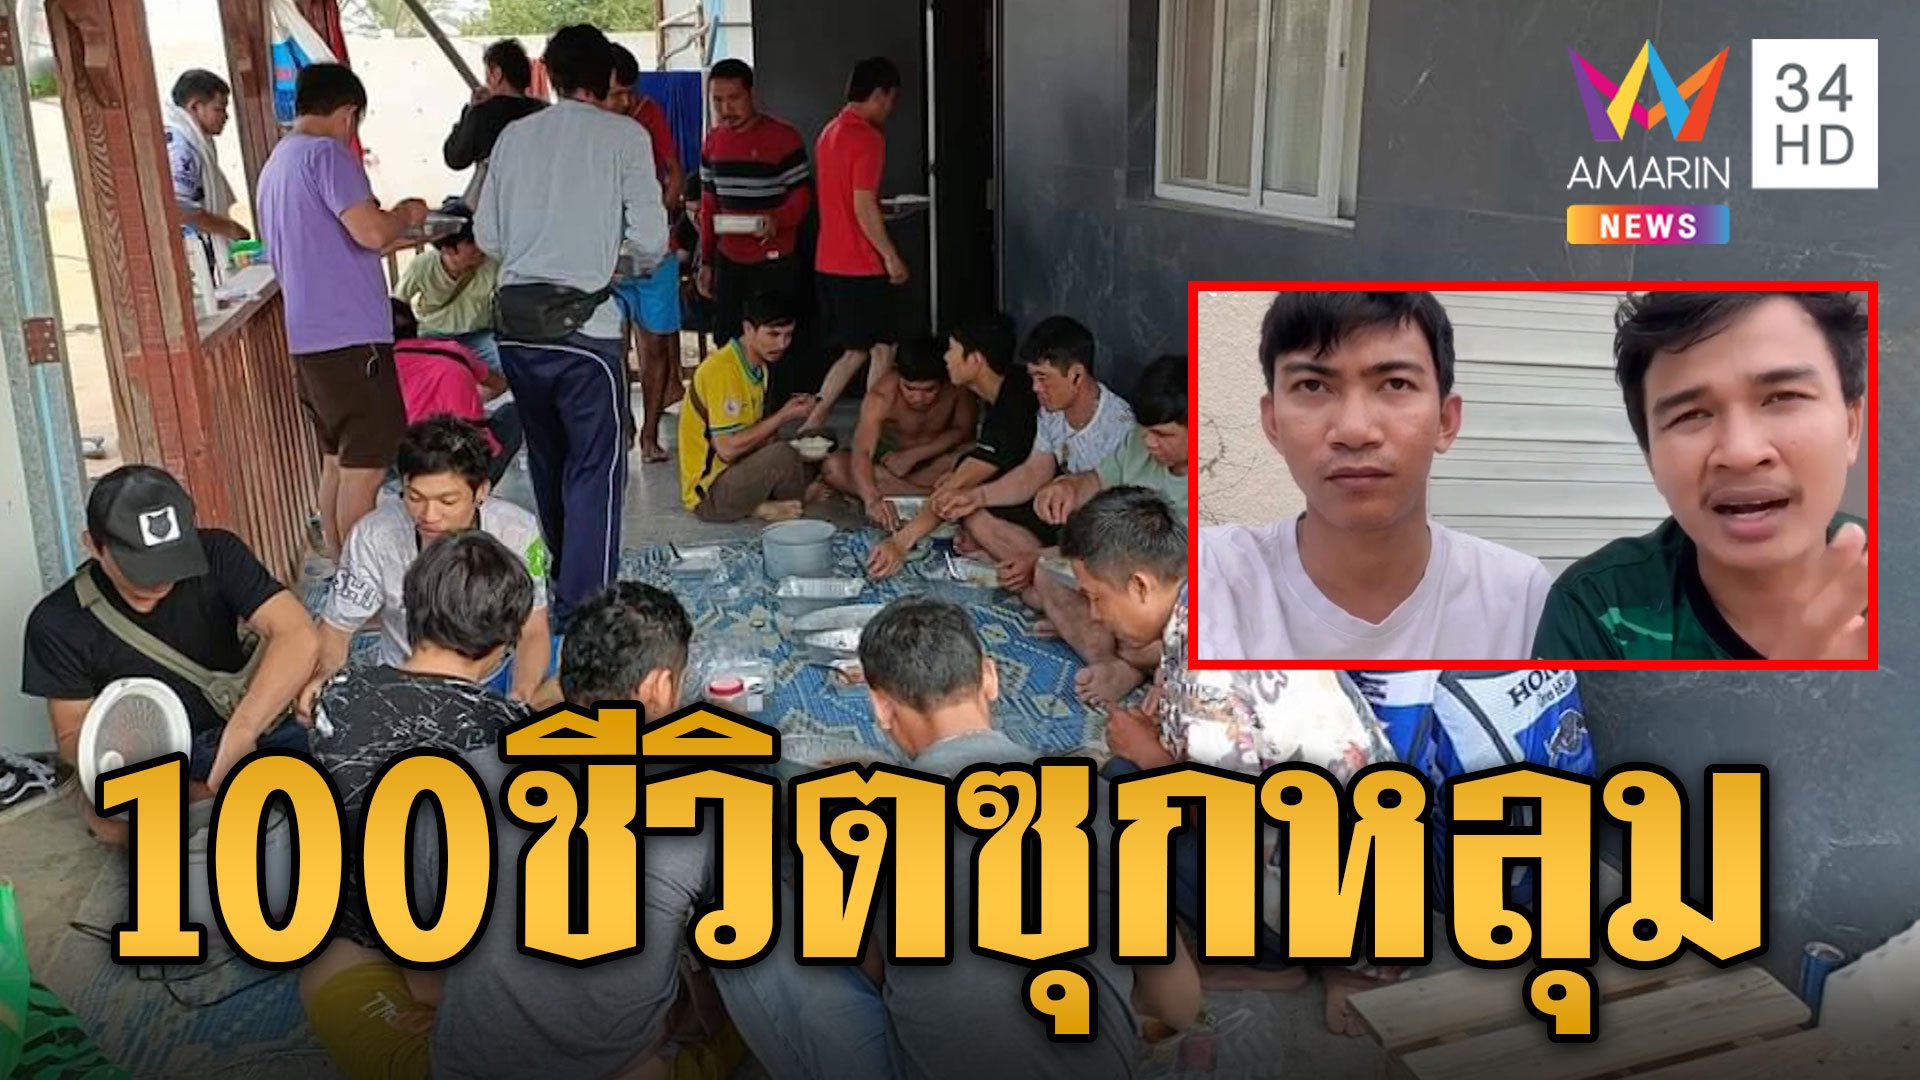 ทหารยิวลุยช่วยอพยพคนไทยหนี ระทึกเล่านาทีไล่ยิง ร้อยคนแย่งกันหายใจในหลุมหลบภัย | ข่าวอรุณอมรินทร์ | 12 ต.ค. 66 | AMARIN TVHD34